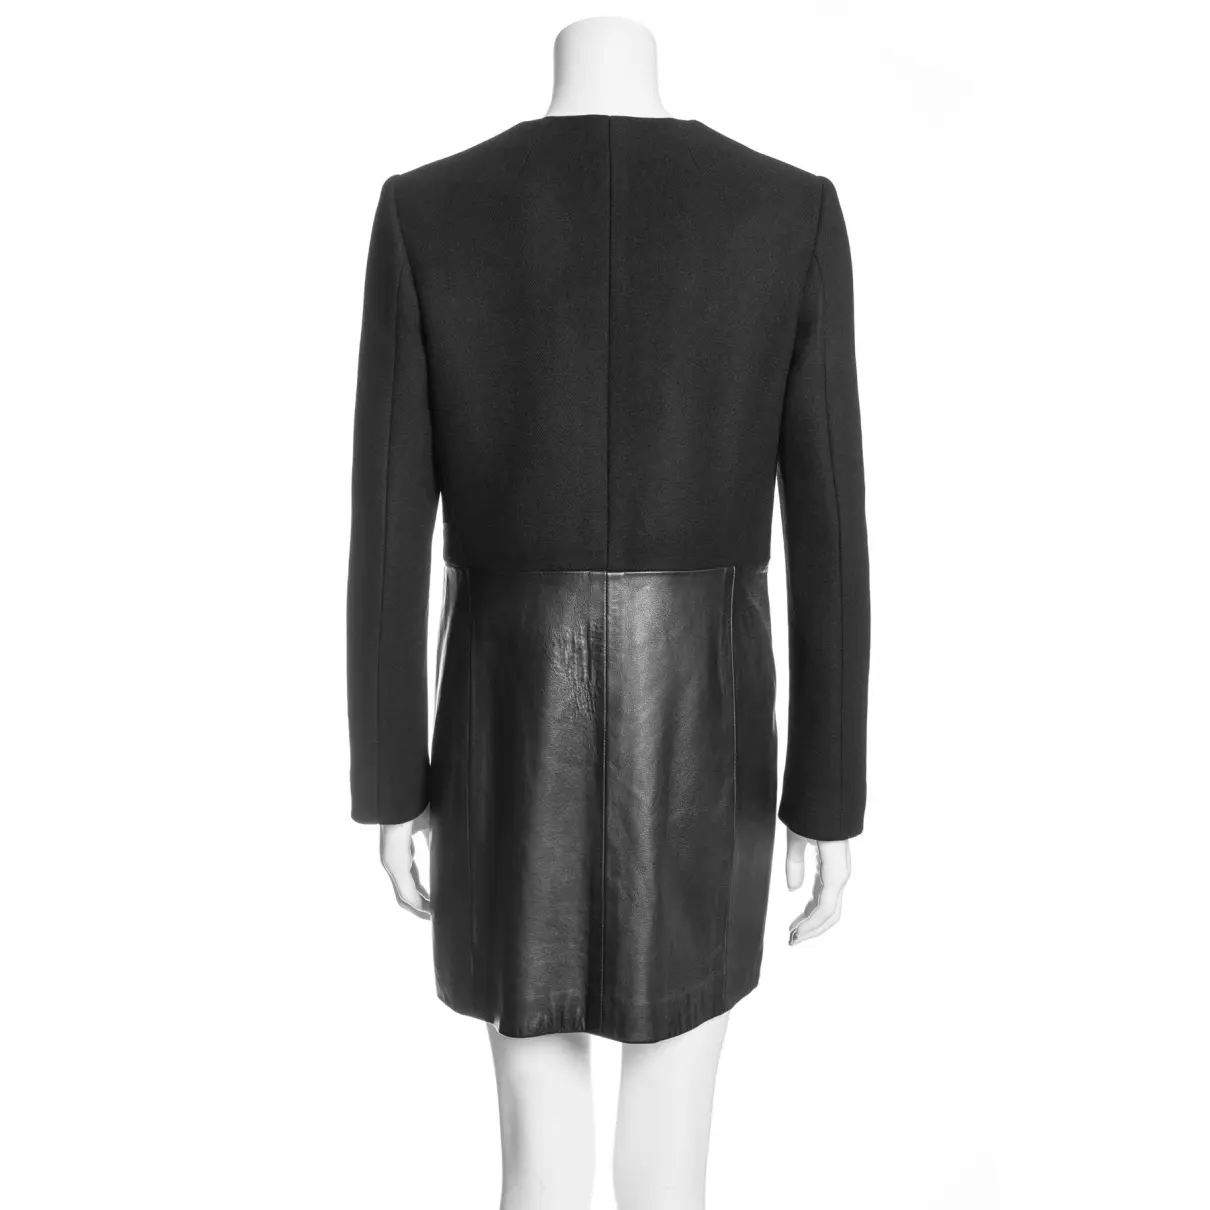 Buy Joseph Leather coat online